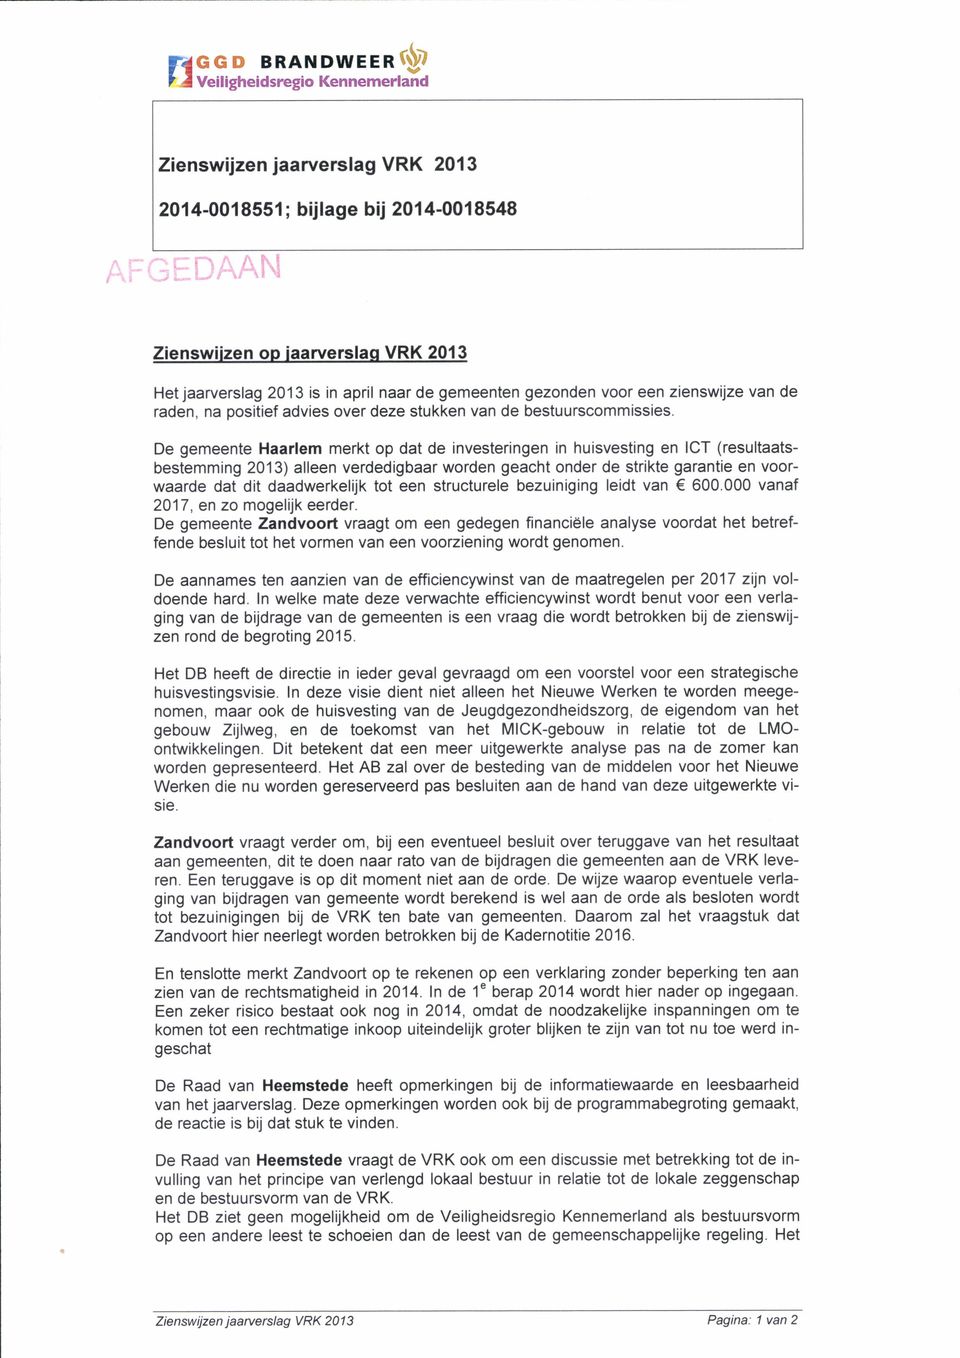 De gemeente Haarlem merkt op dat de investeringen in huisvesting en ICT (resultaatsbestemming 2013) alleen verdedigbaar worden geacht onder de strikte garantie en voorwaarde dat dit daadwerkelijk tot